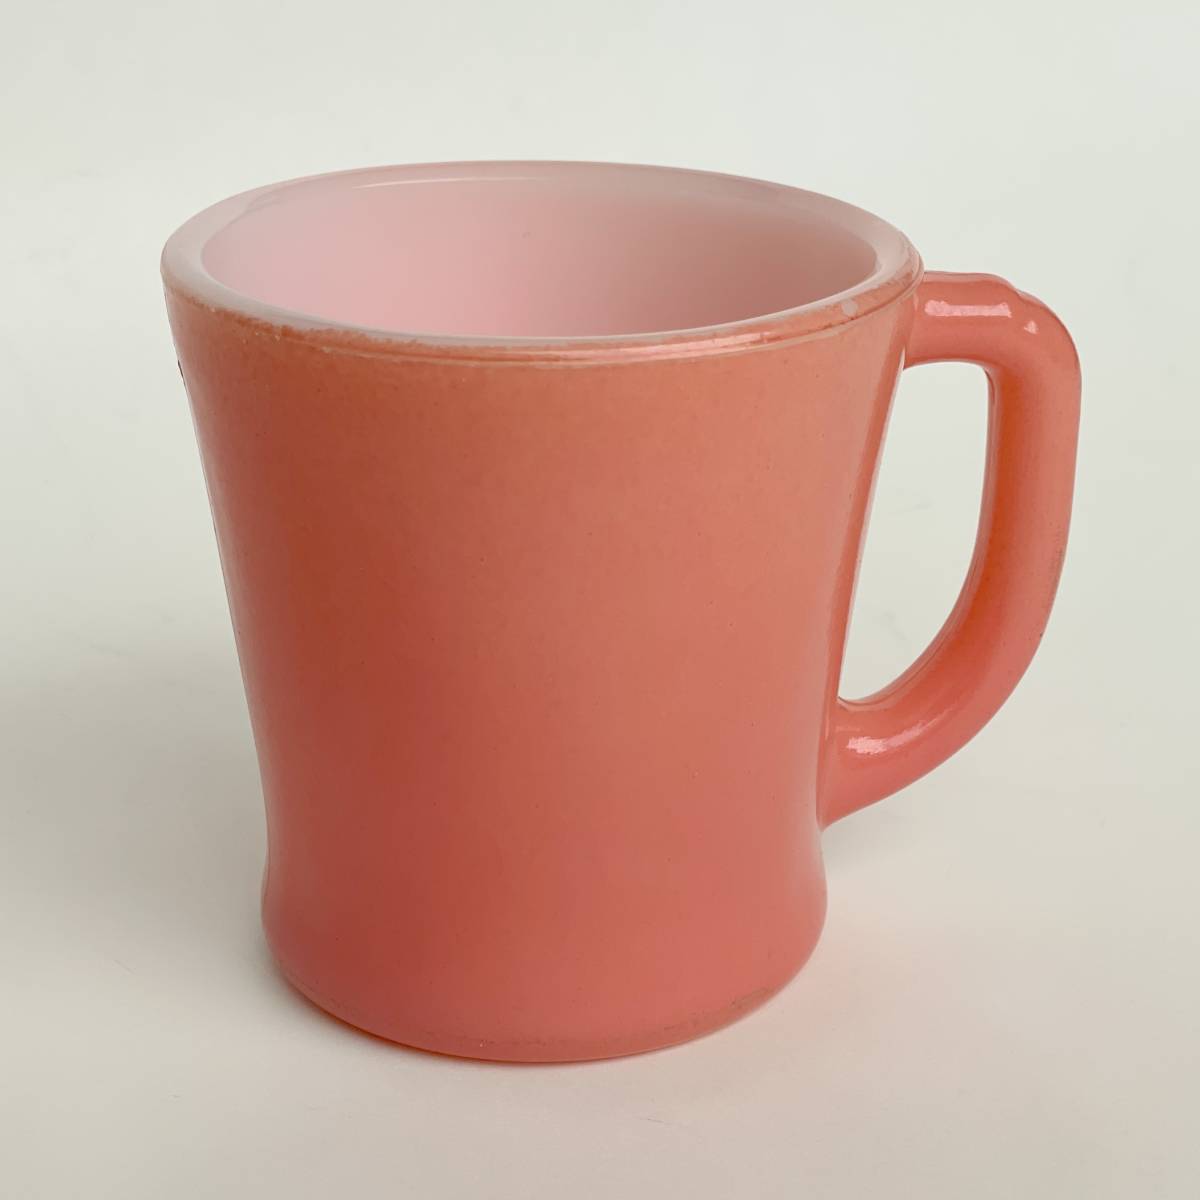 FIRE KING ファイヤーキング 濃いピンク 桜色 マグカップ Dハンドル ヴィンテージ 耐熱 ミルクグラス アメリカ製_画像1